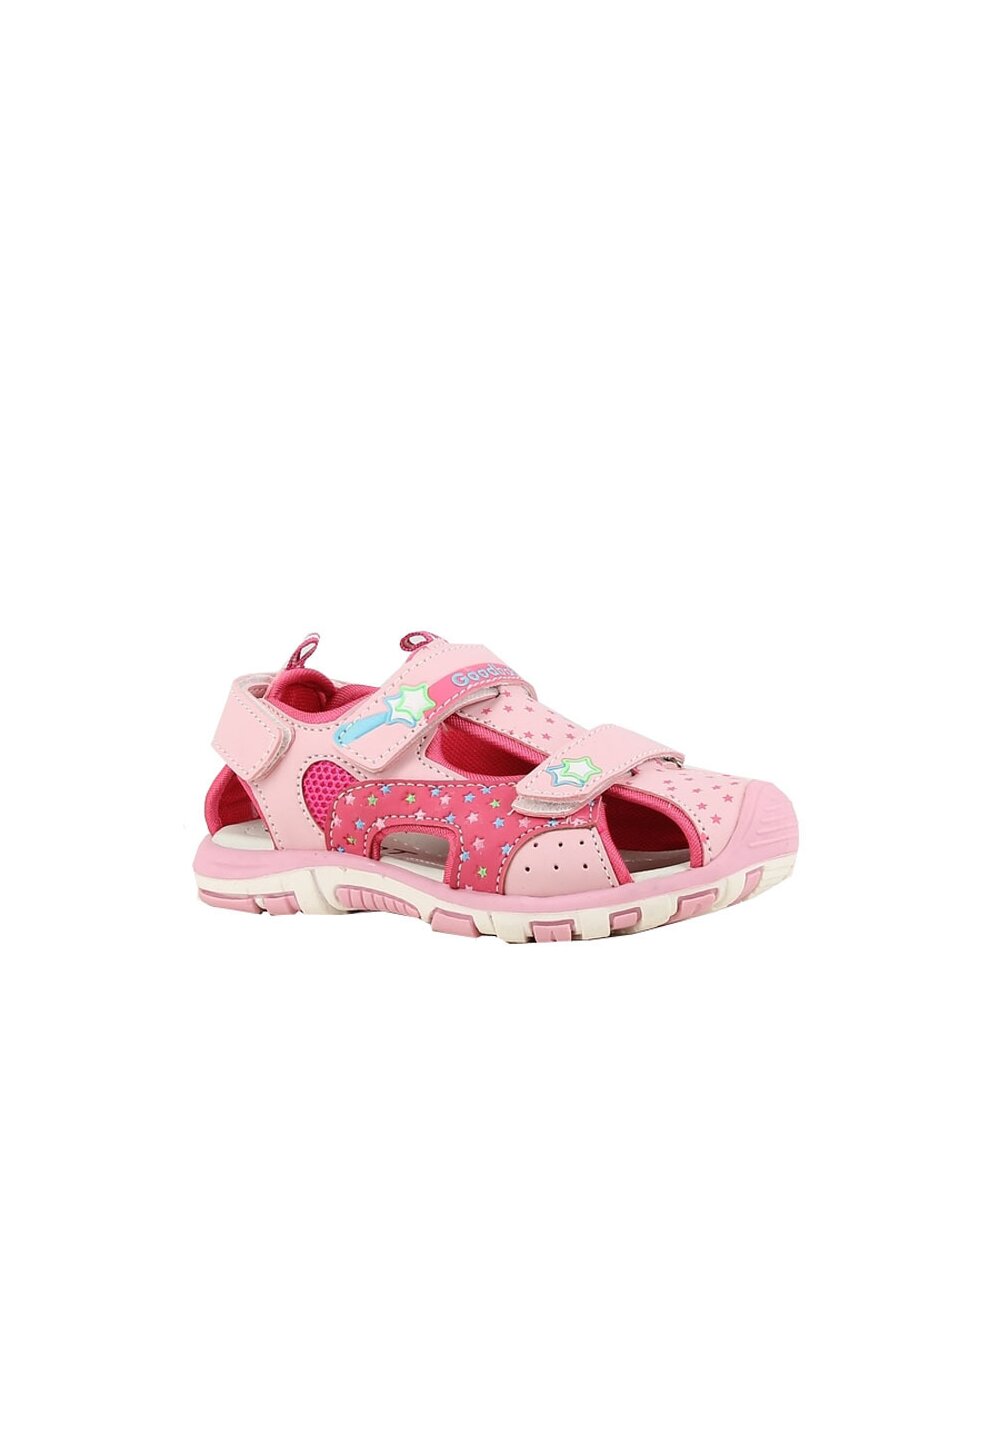 Sandale fete, cu scai din piele ecologica, roz deschis cu stele OEM